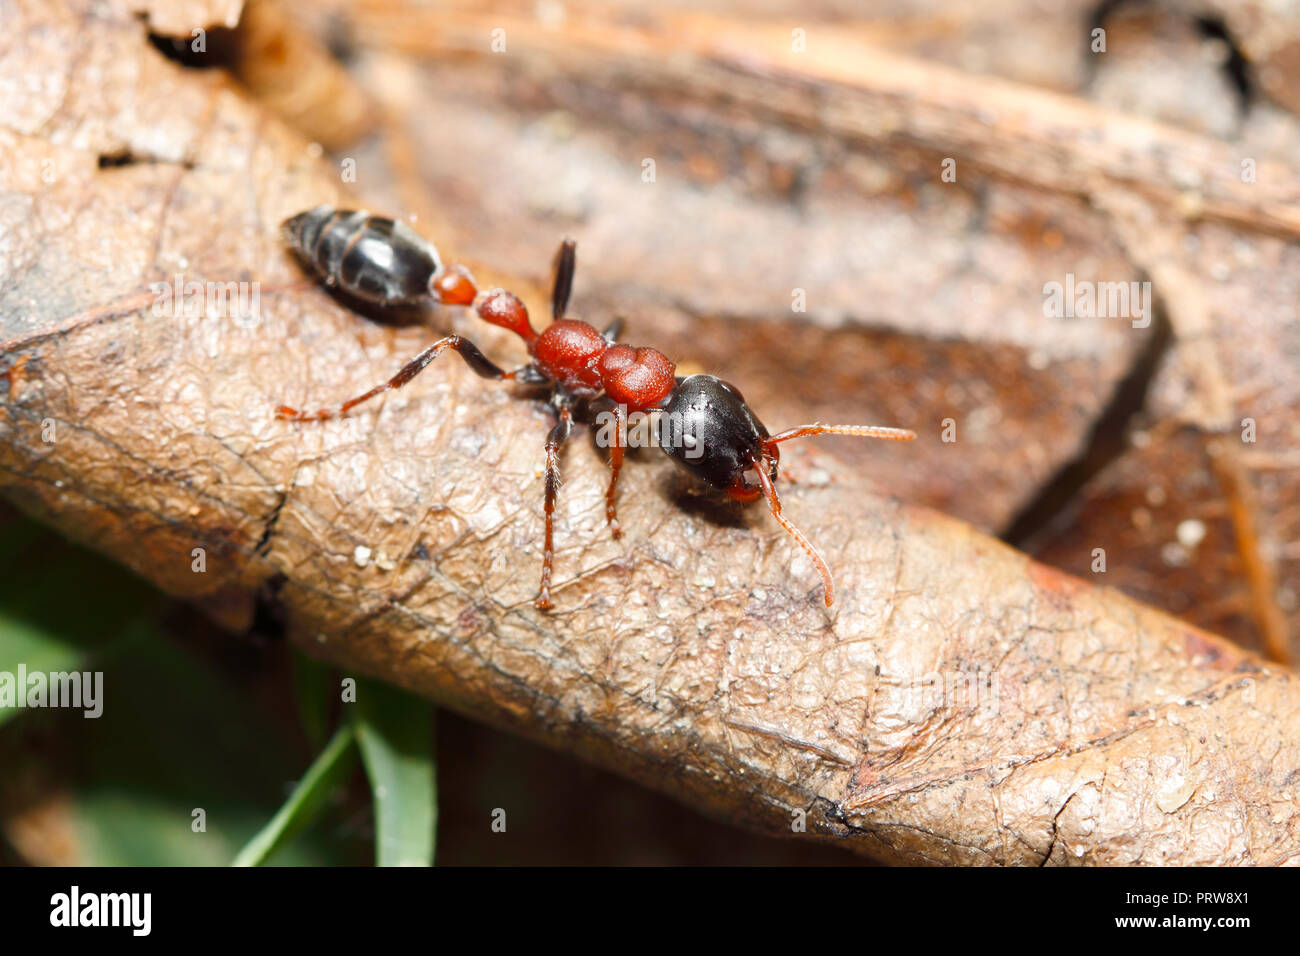 Arboricole bi-colore (ant) : fourmi Tetraponera rufonigra piqûre douloureuse qui peut provoquer des réactions allergiques et des morts par choc anaphylactique Banque D'Images